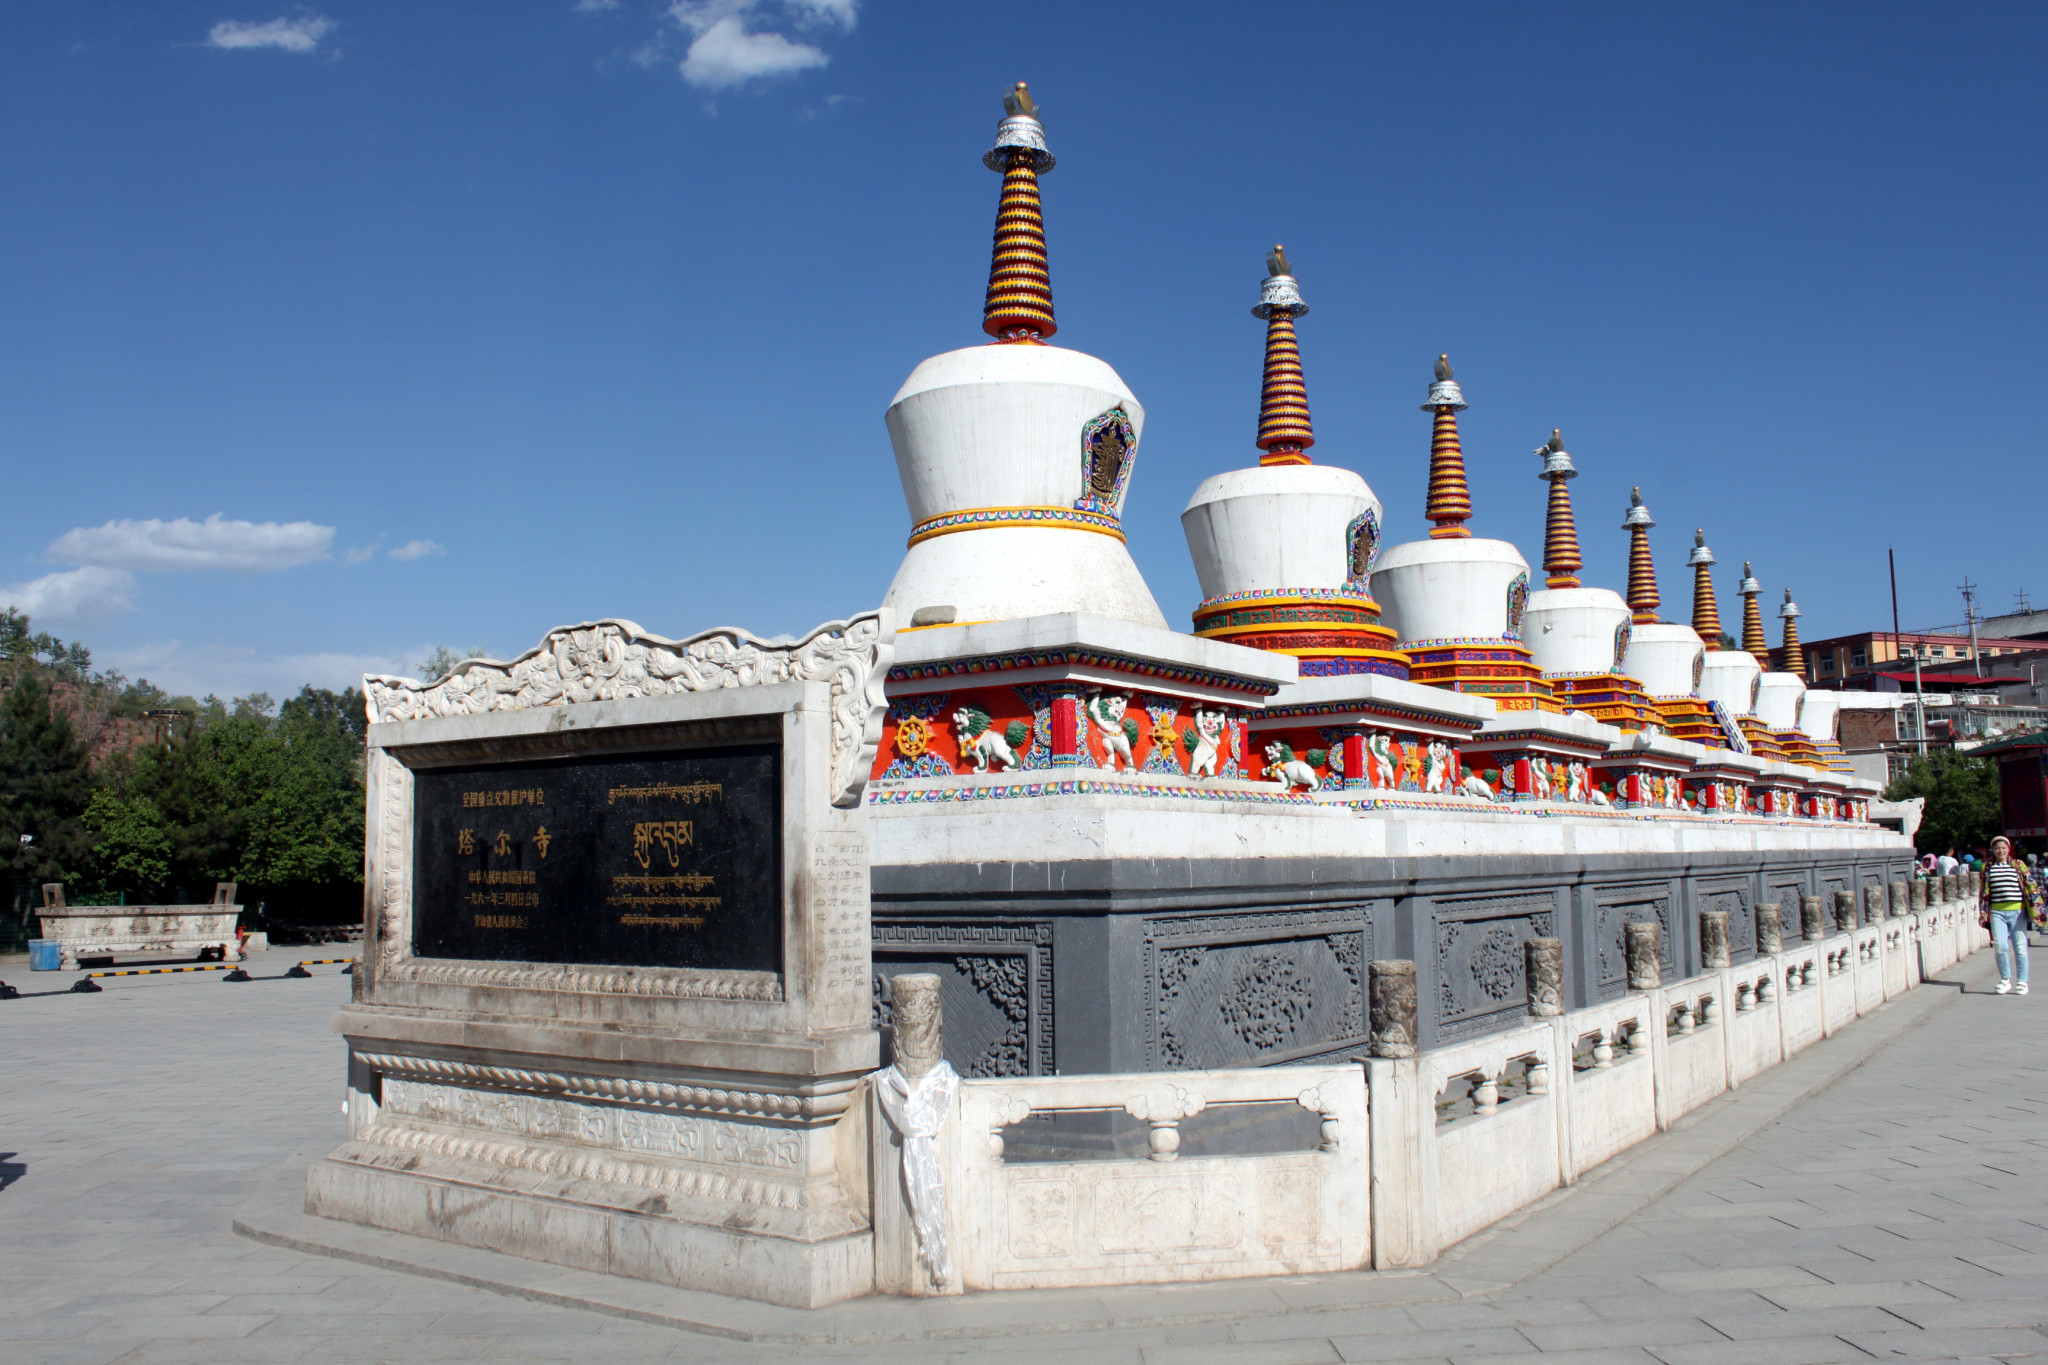 【携程攻略】青海塔尔寺景点,塔尔寺美得惊人 ，藏传佛教卍的建筑色彩与构图，第二张屋顶上是真的…